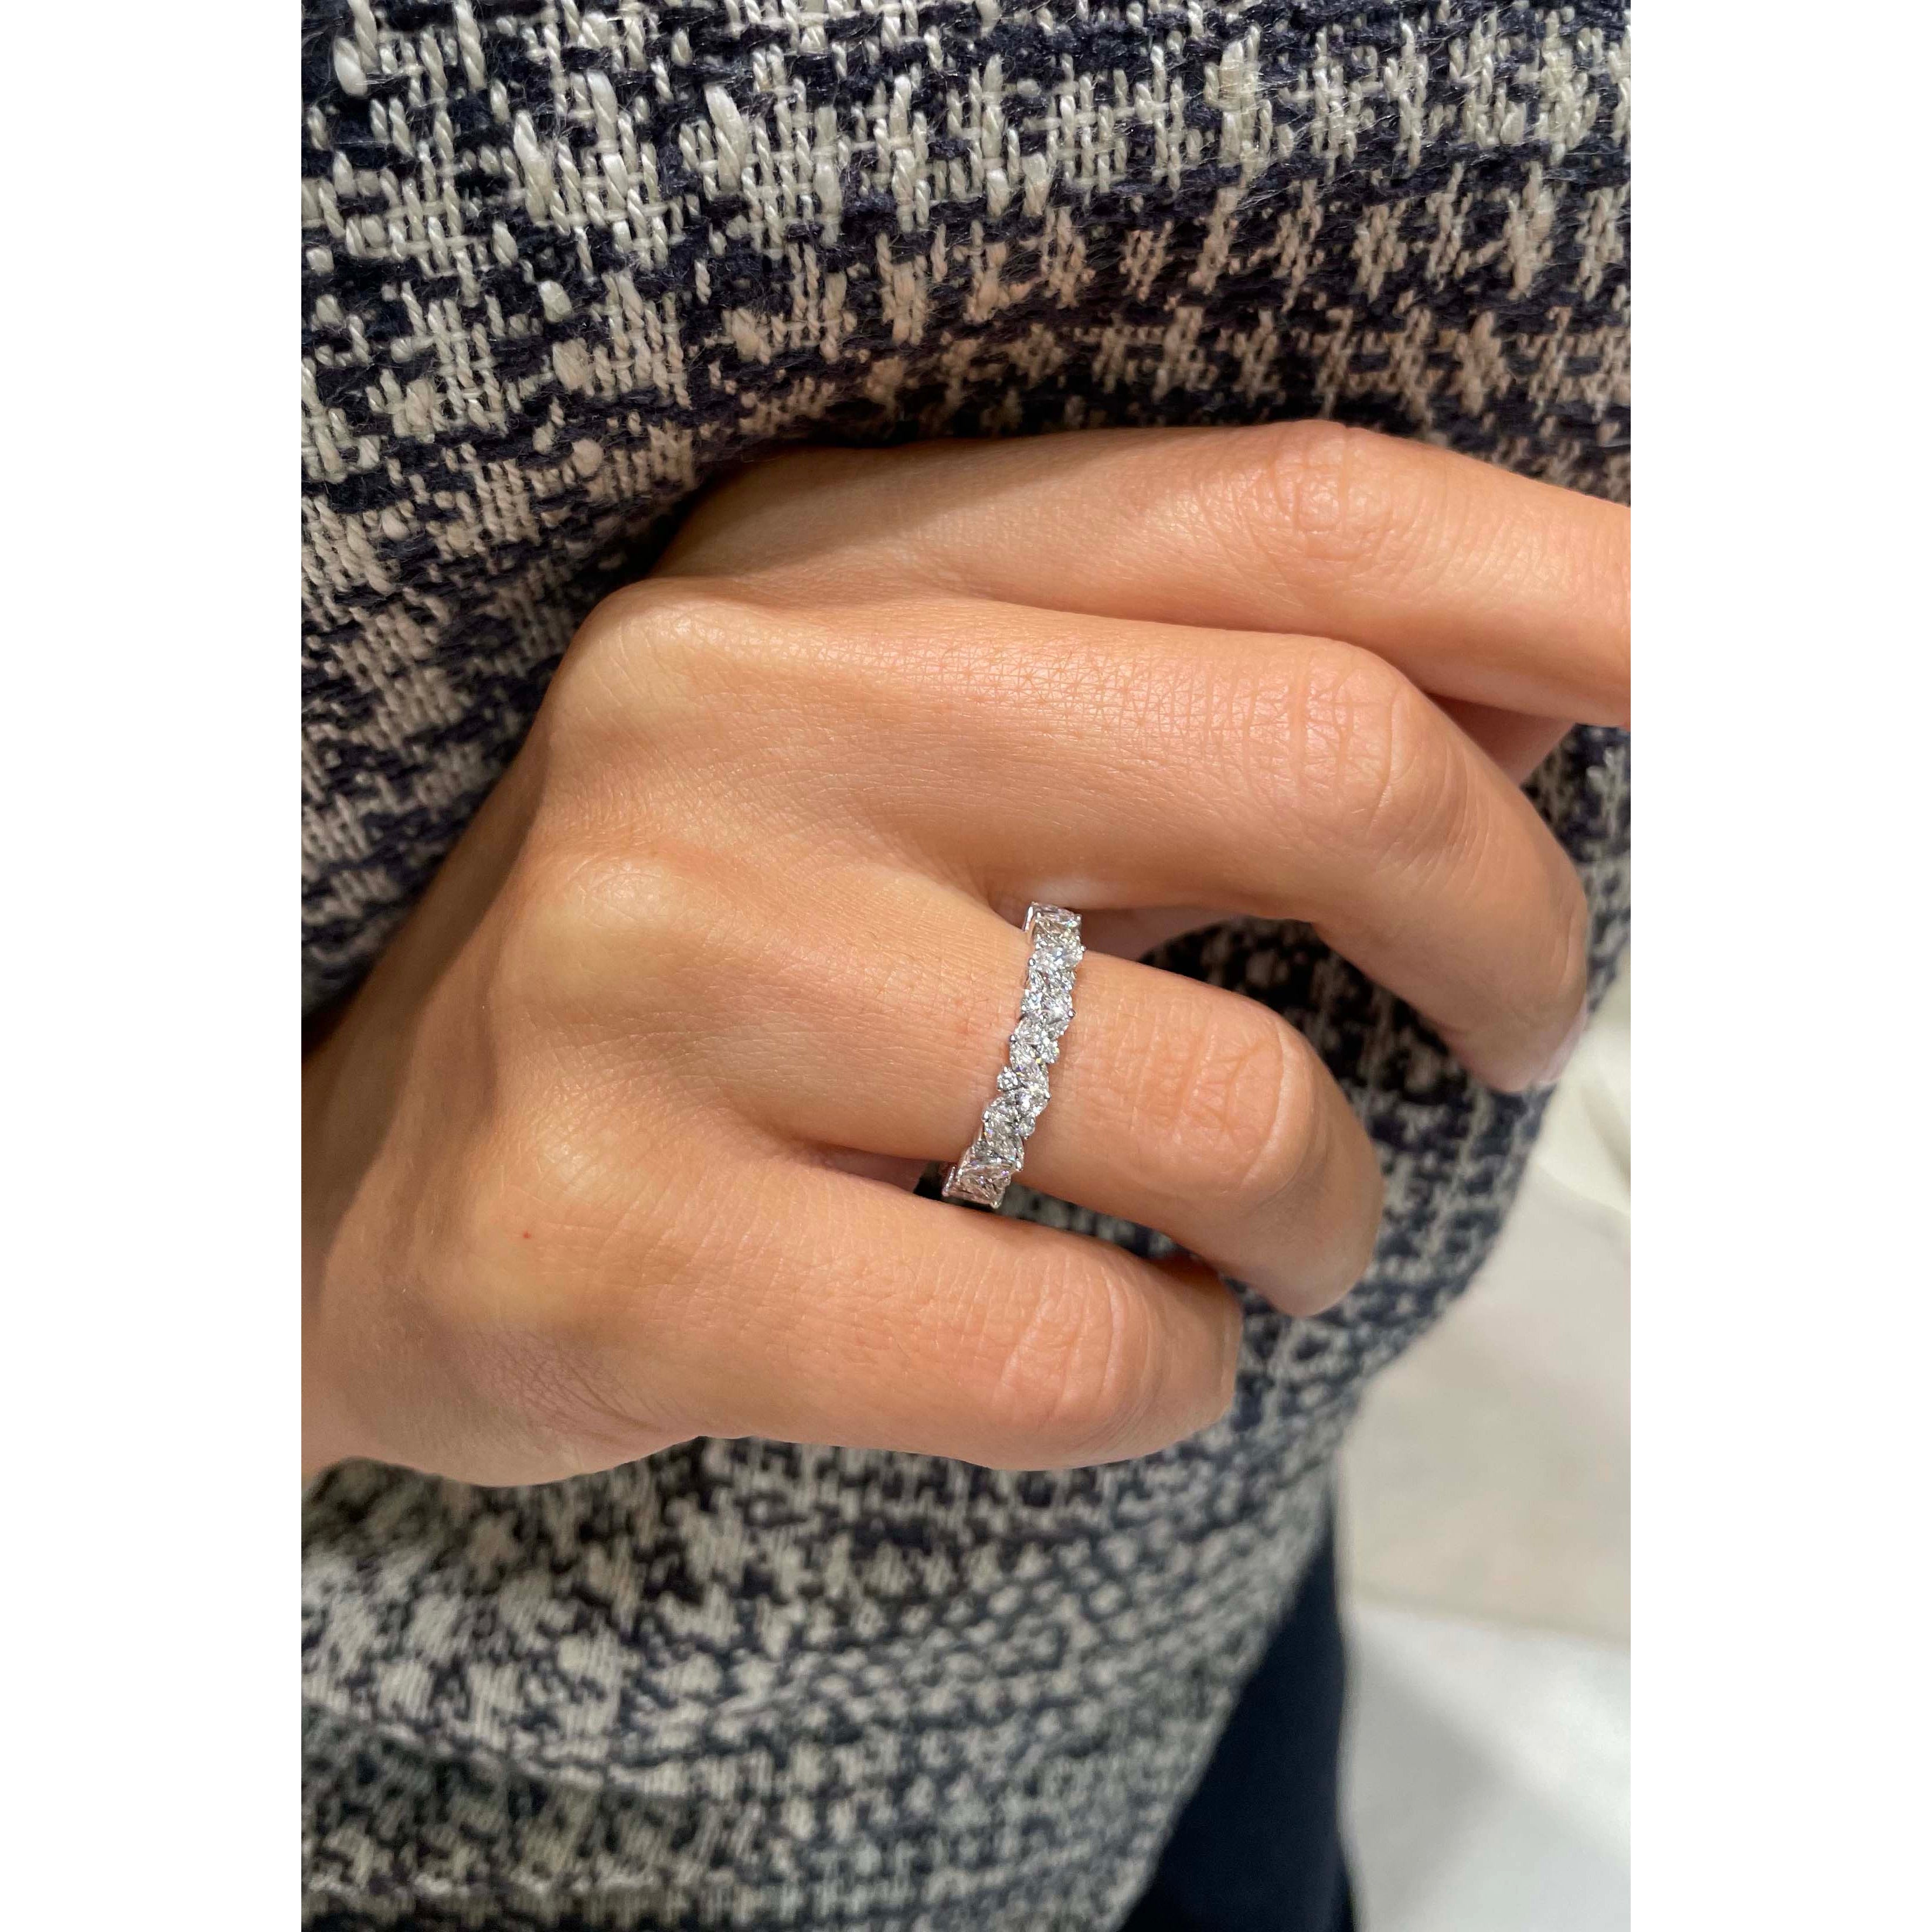 Regina Diamond Wedding Ring   (0.85 Carat) -14K White Gold